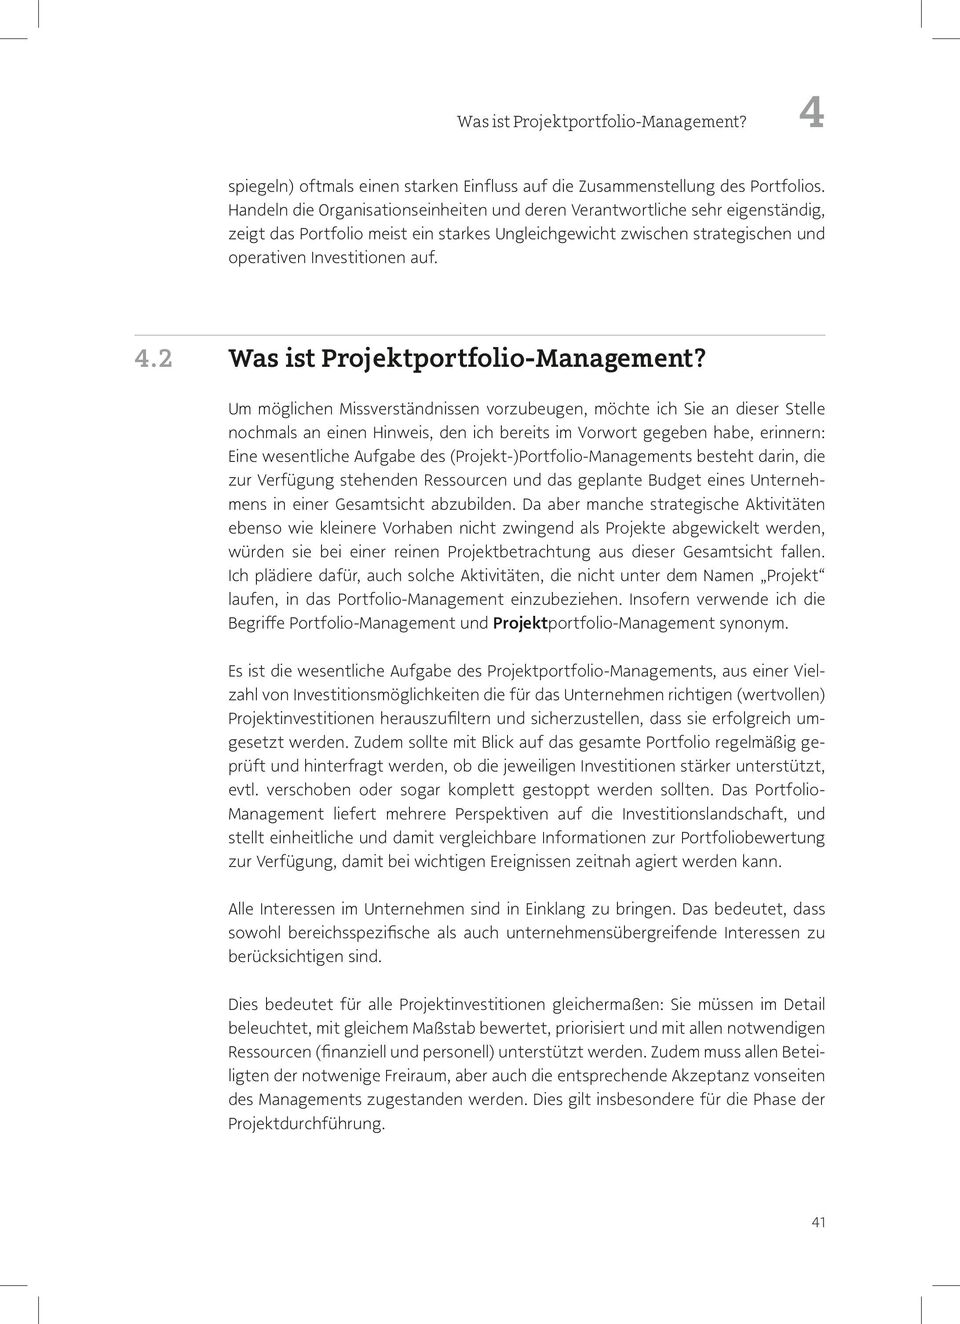 .2 Was ist Projektportfolio-Management?